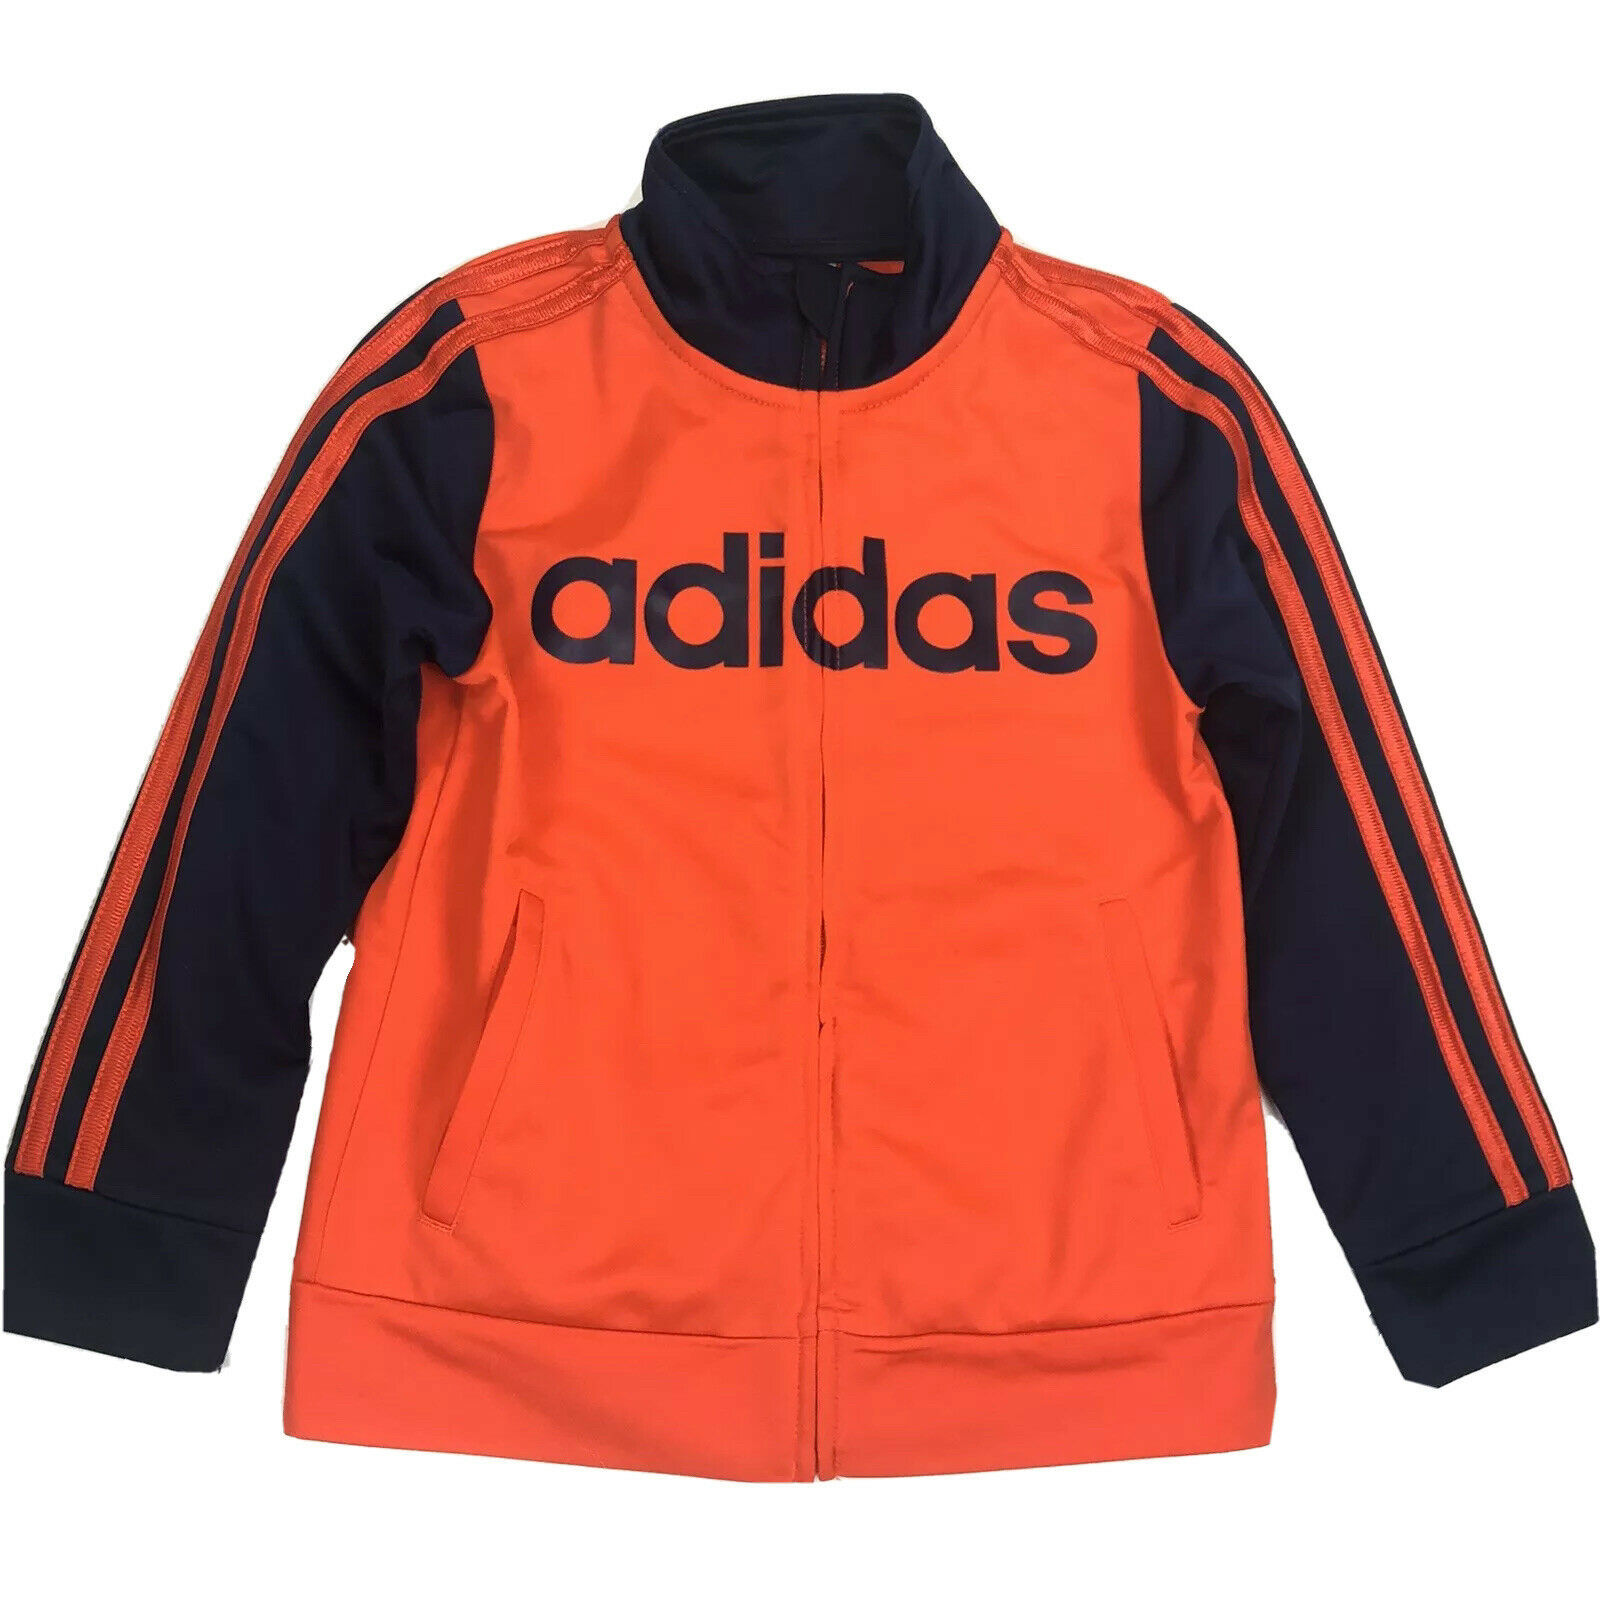 adidas jacket size 6